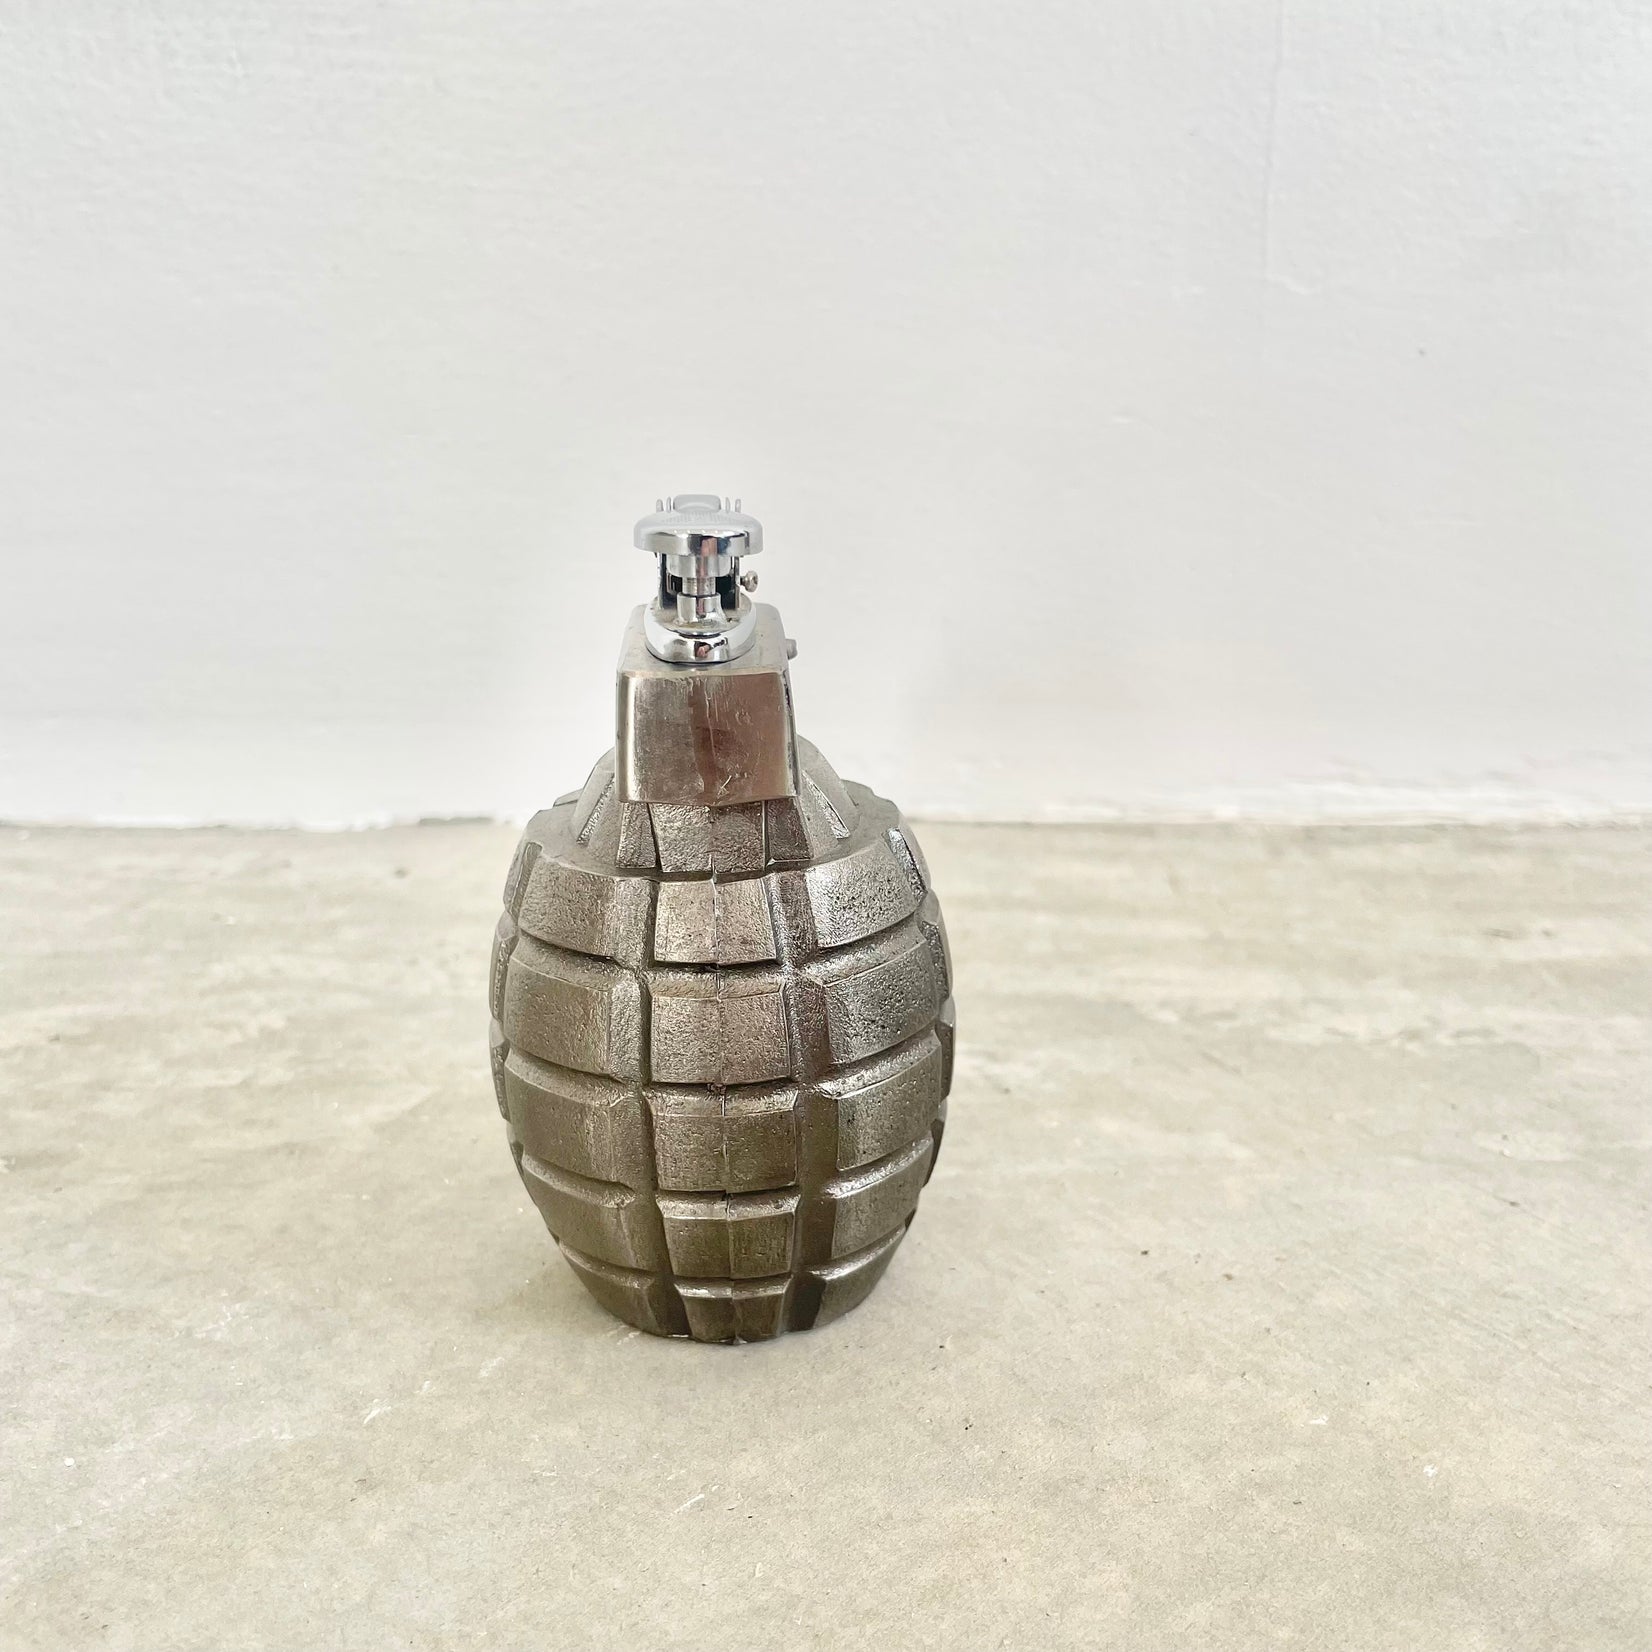 Grenade Lighter, 1980s Japan